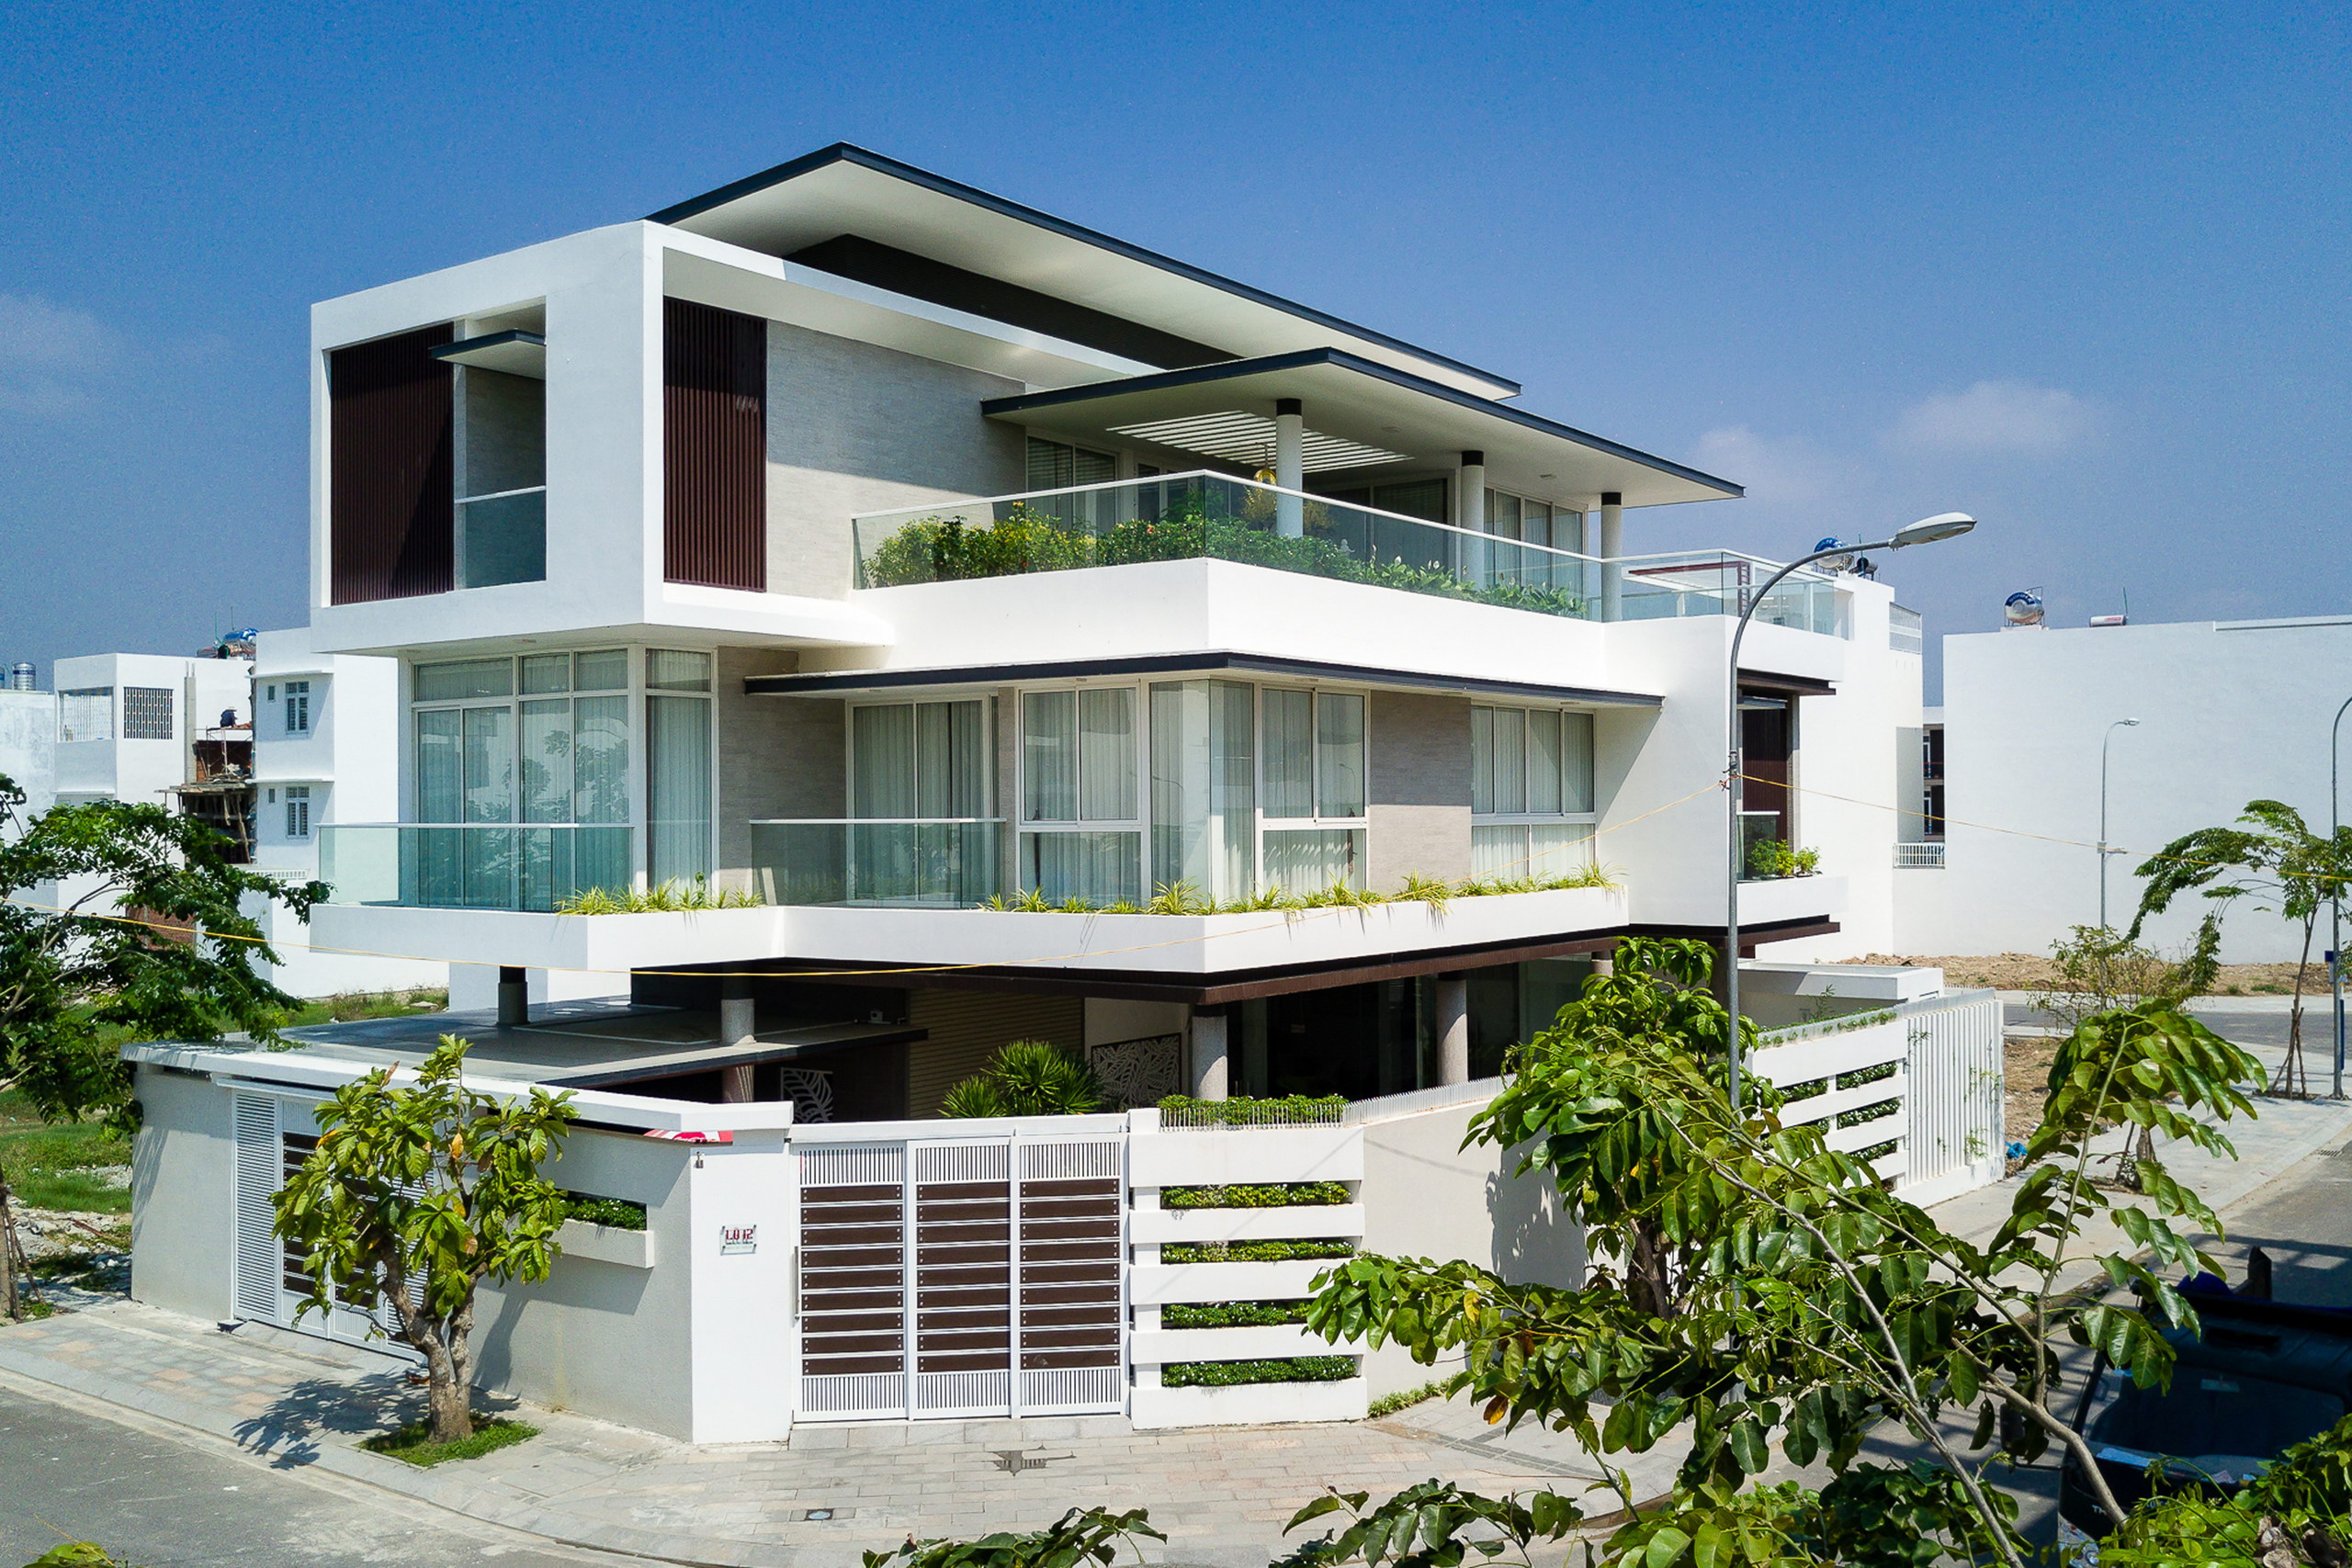 1a 3 - Biệt thự lô góc 3 tầng kiến trúc hiện đại, công trình được thiết kế tại TP biển Nha Trang